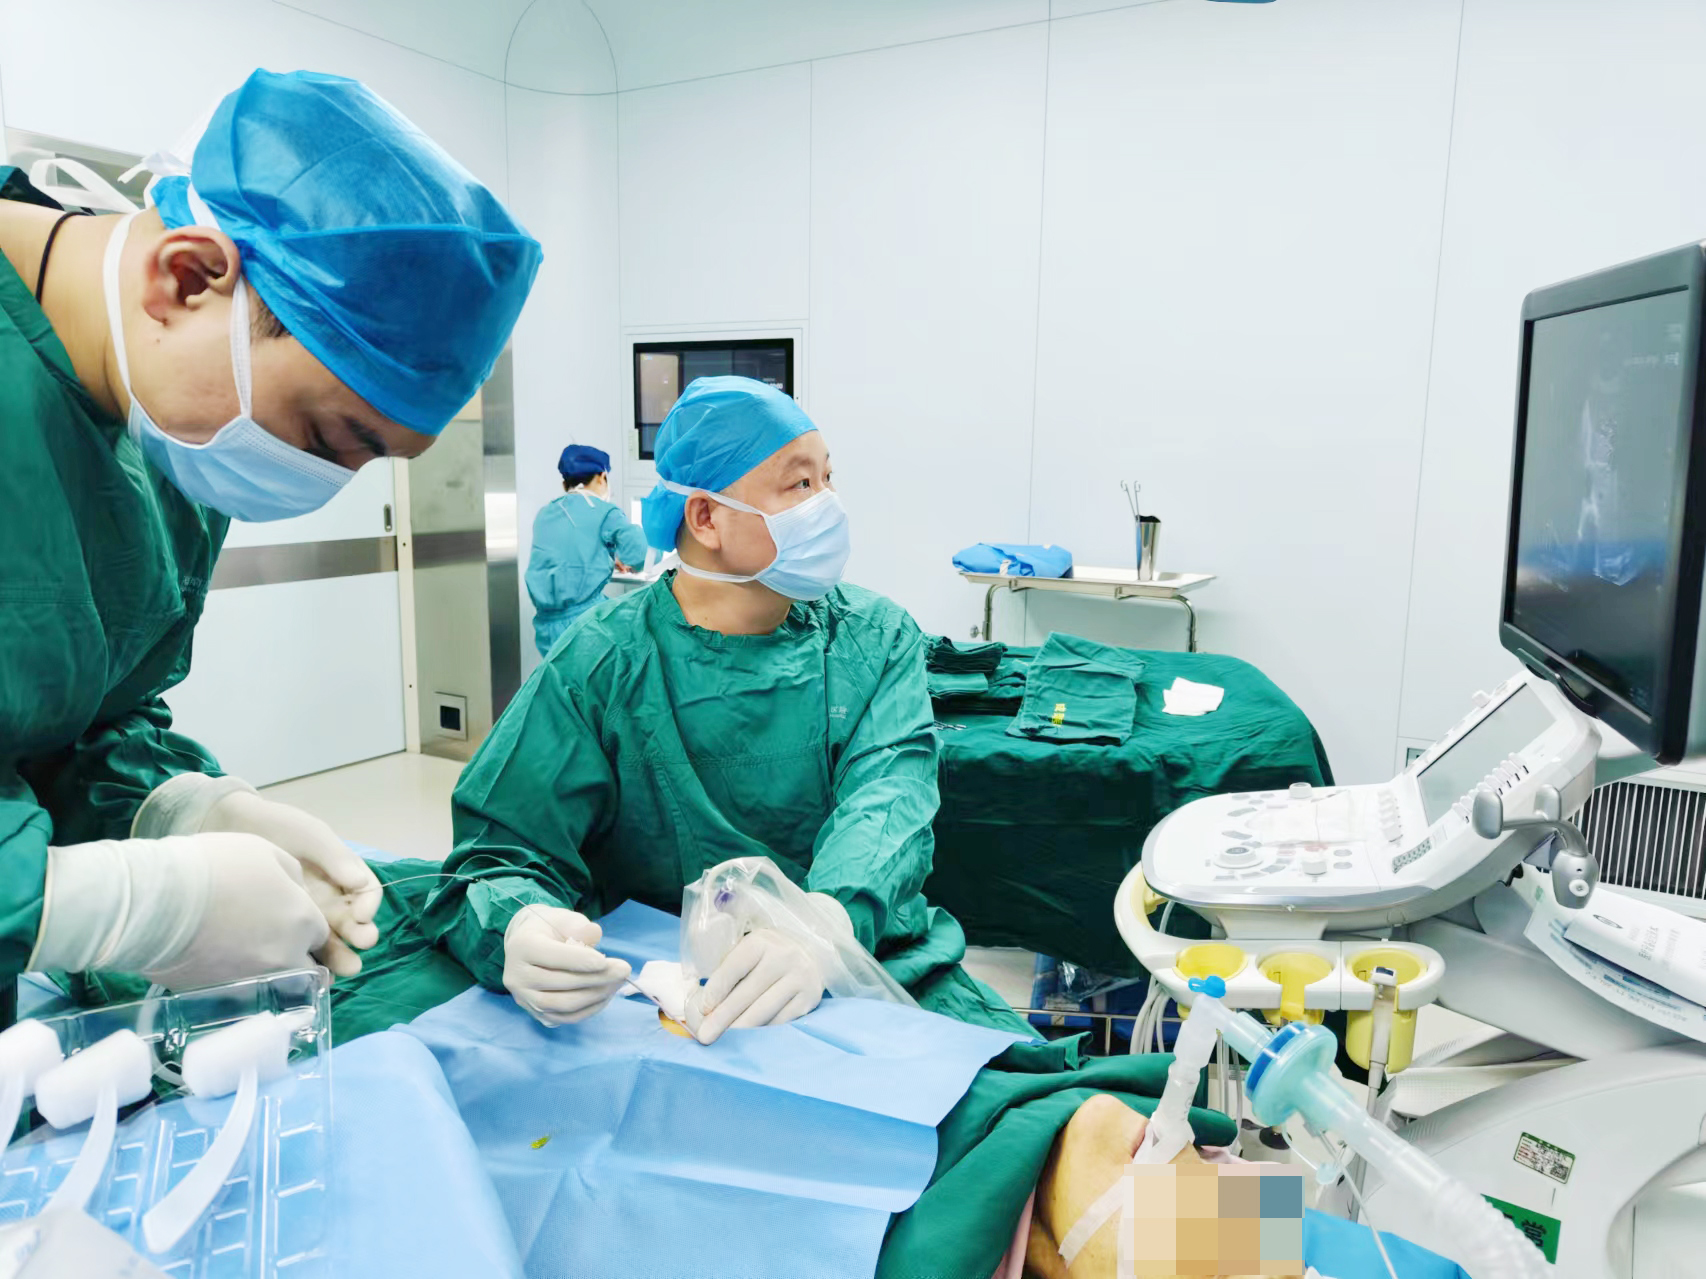 海南省肿瘤医院开展“超时长”超声造影诊疗技术